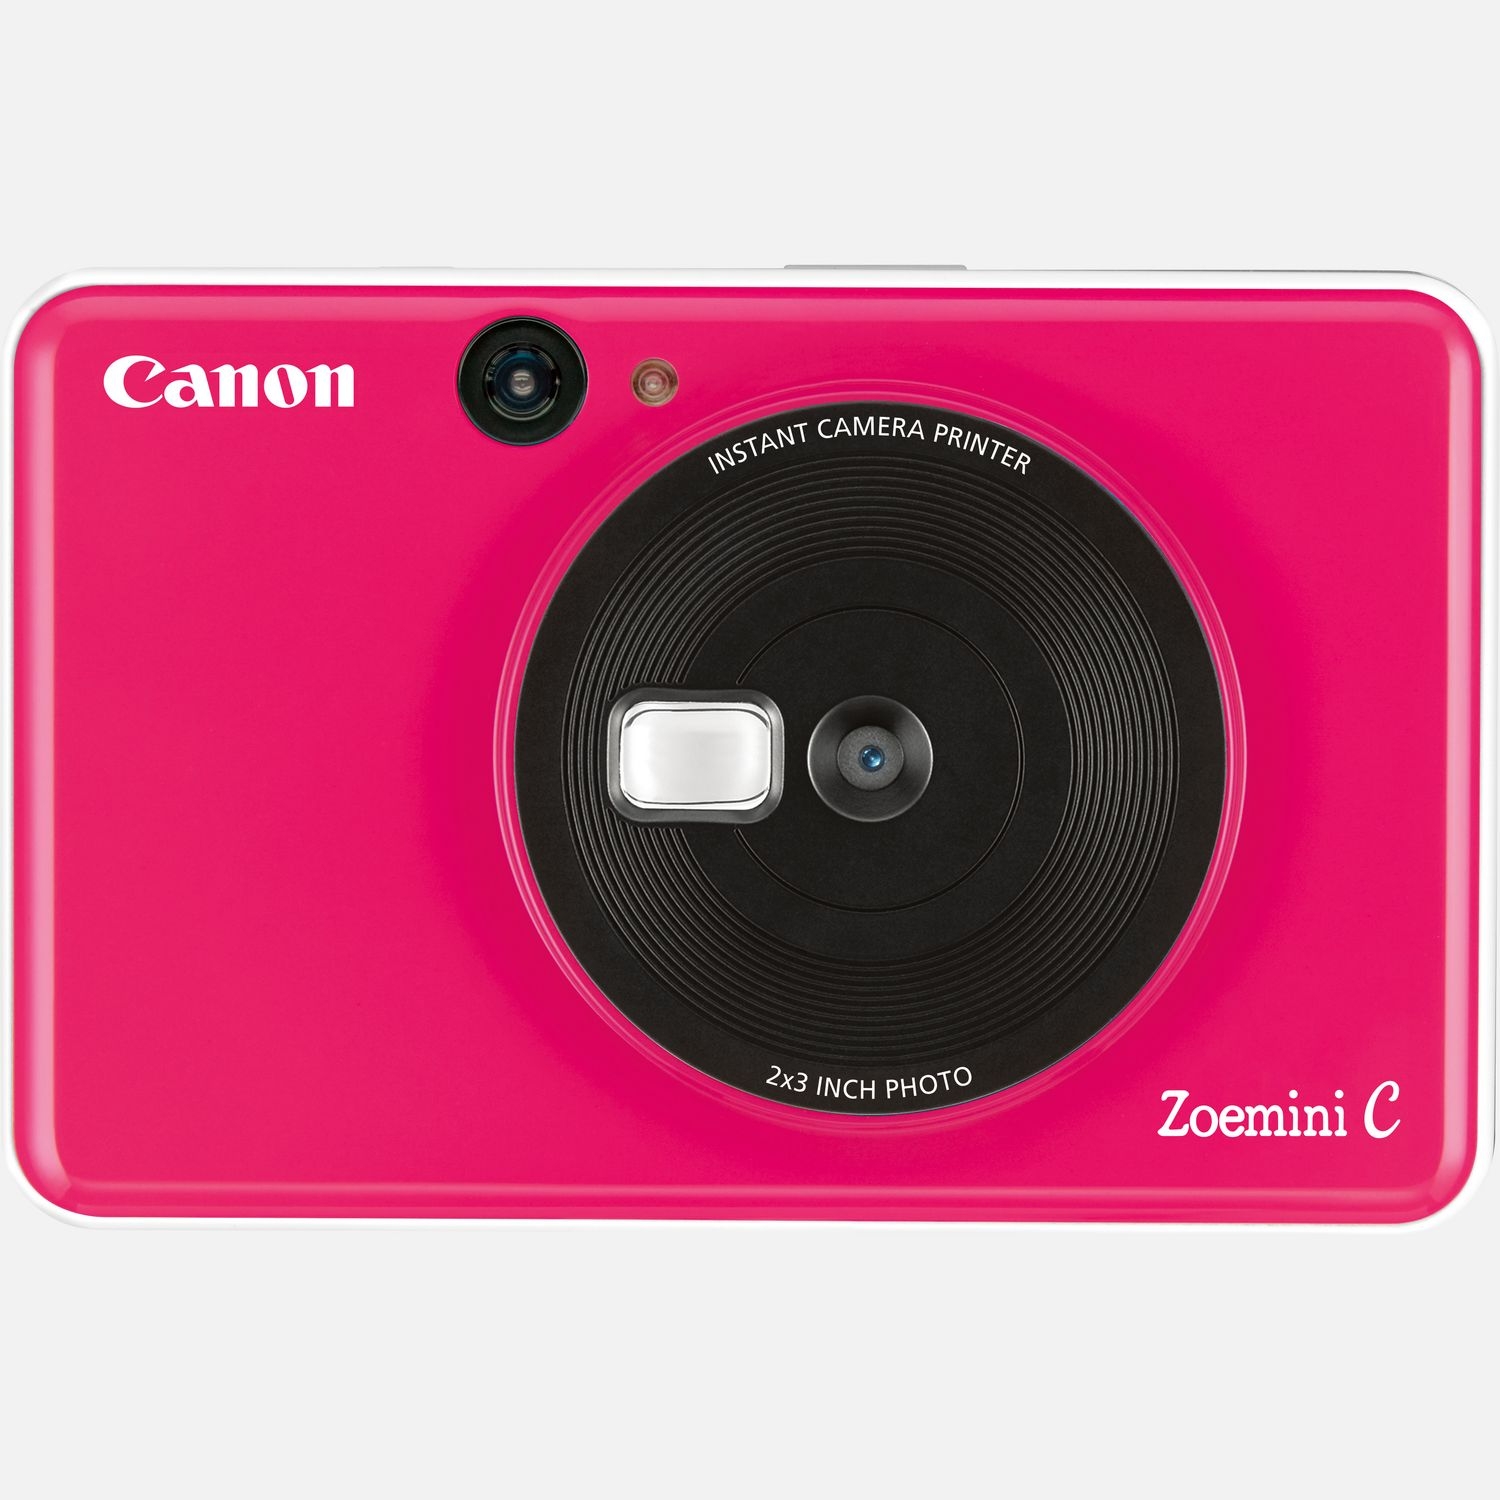 canon fotocamera istantanea zoemini c, bubblegum pink